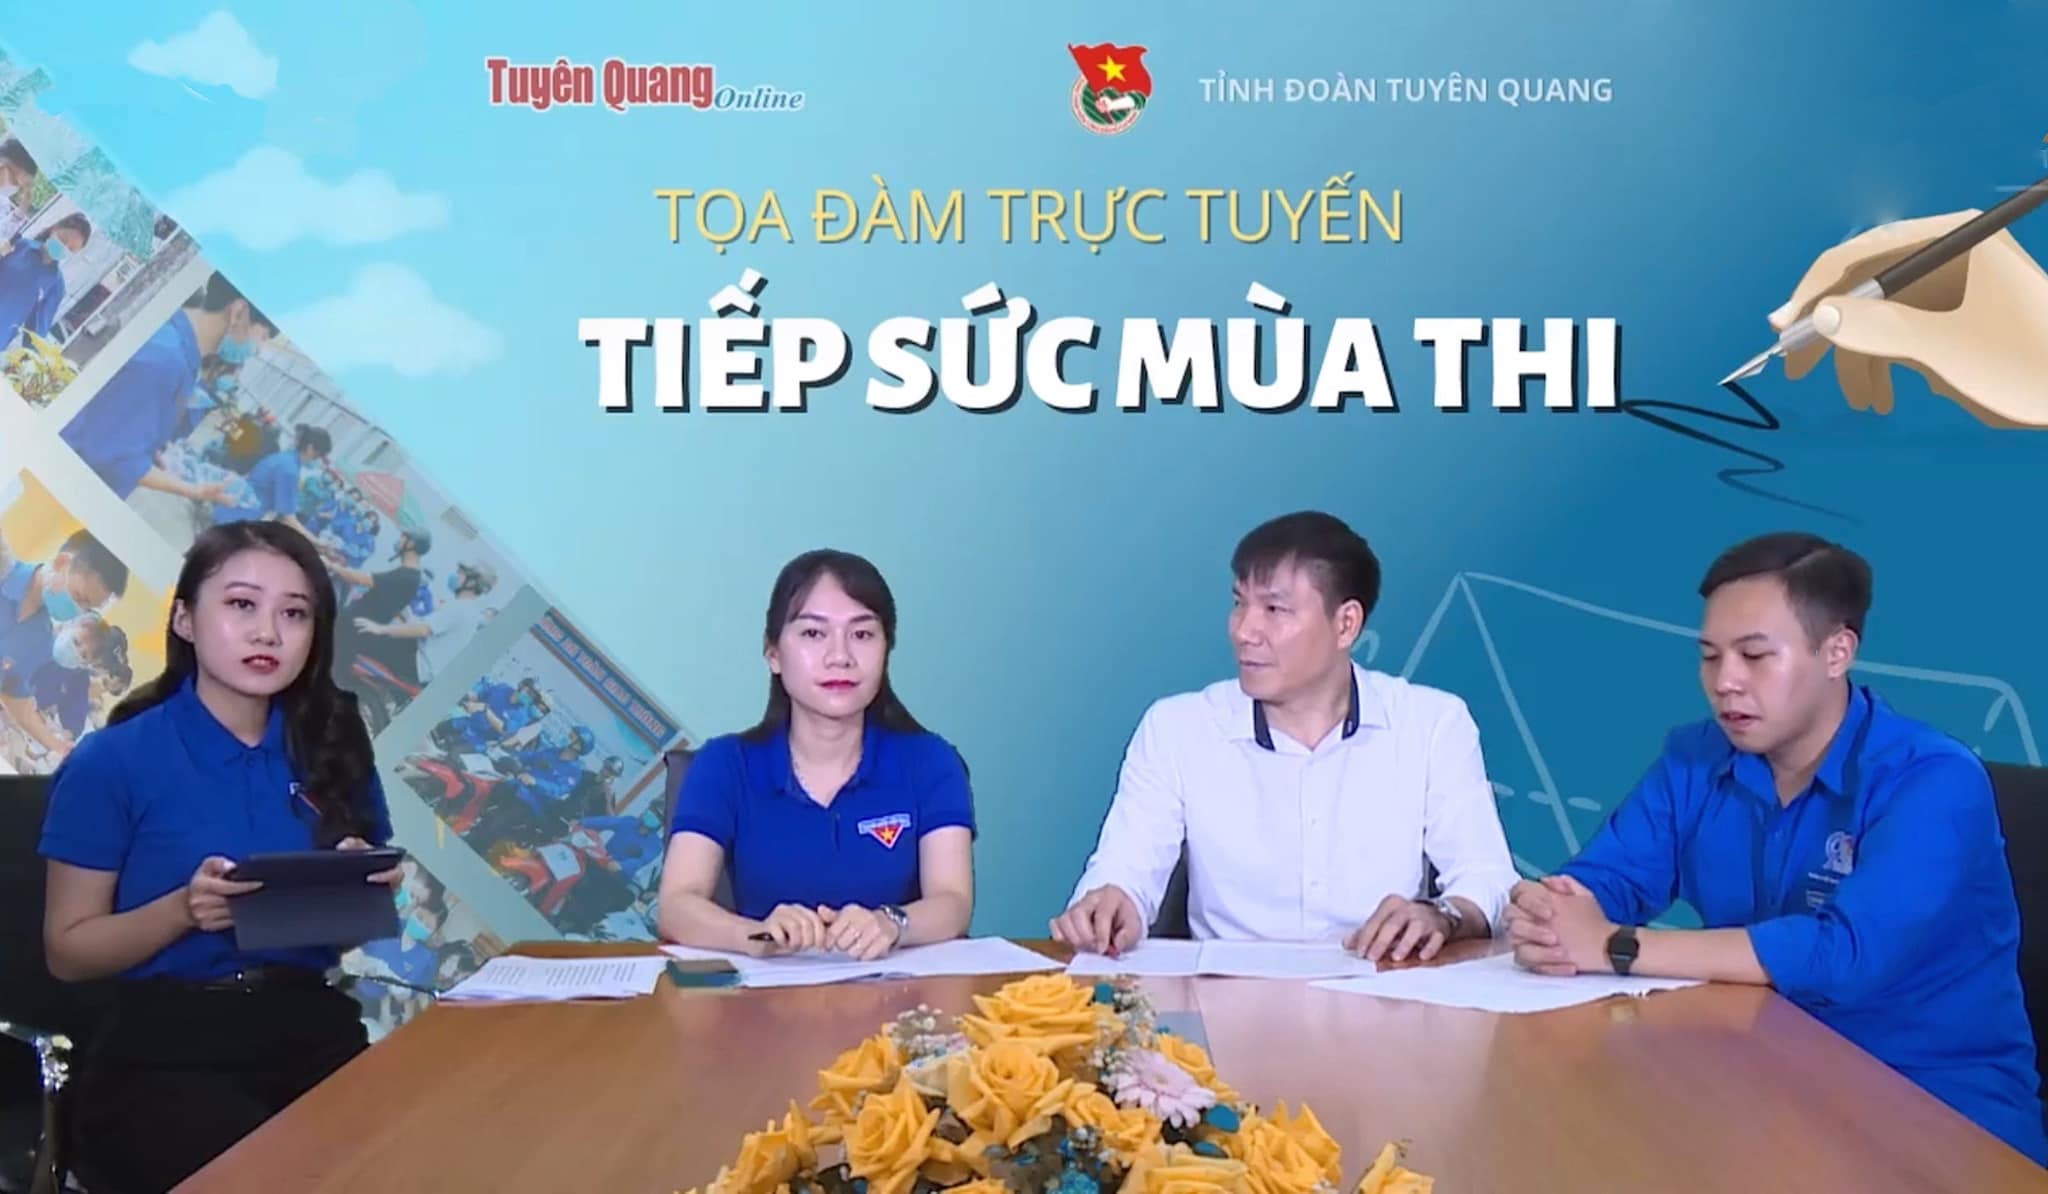 Tỉnh đoàn Tuyên Quang tổ chức toạ đàm trực tuyến tiếp sức mùa thi năm 2022